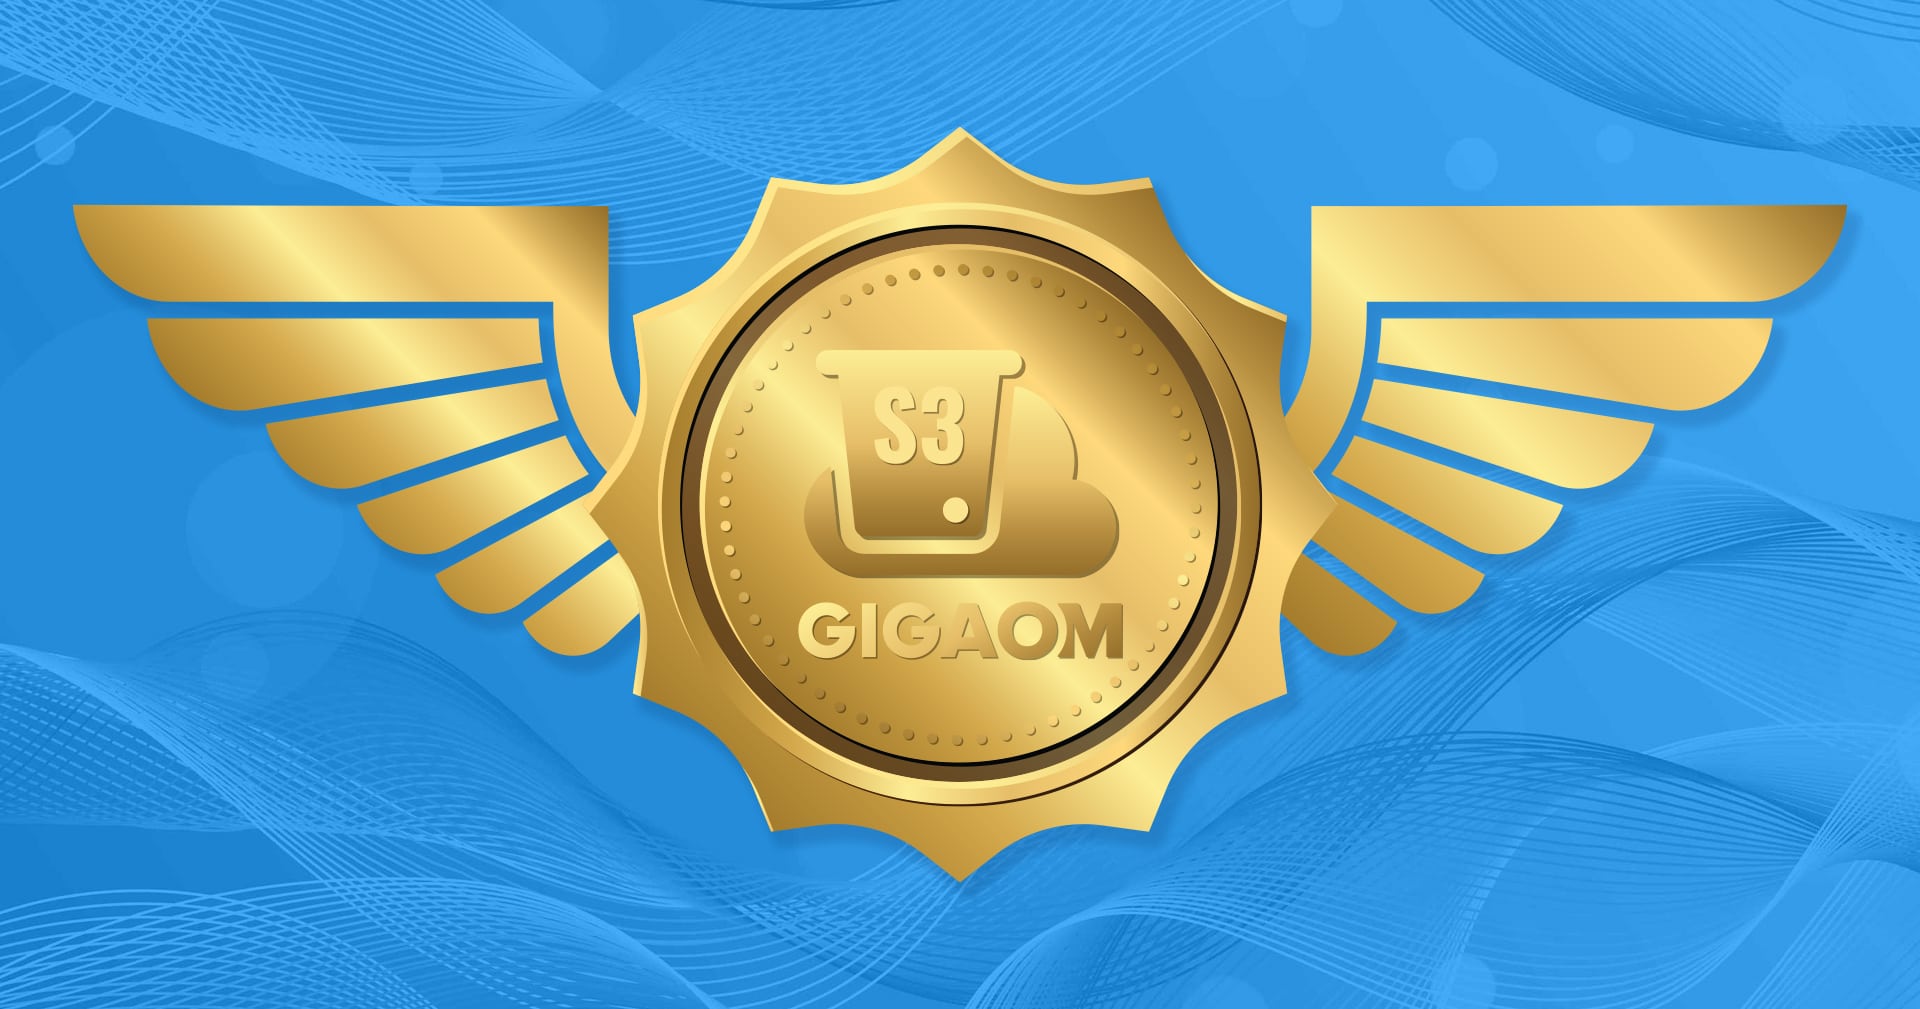 GigaOm clasifica a Linode como "retador" y "rápido" para Amazon Simple Storage Service